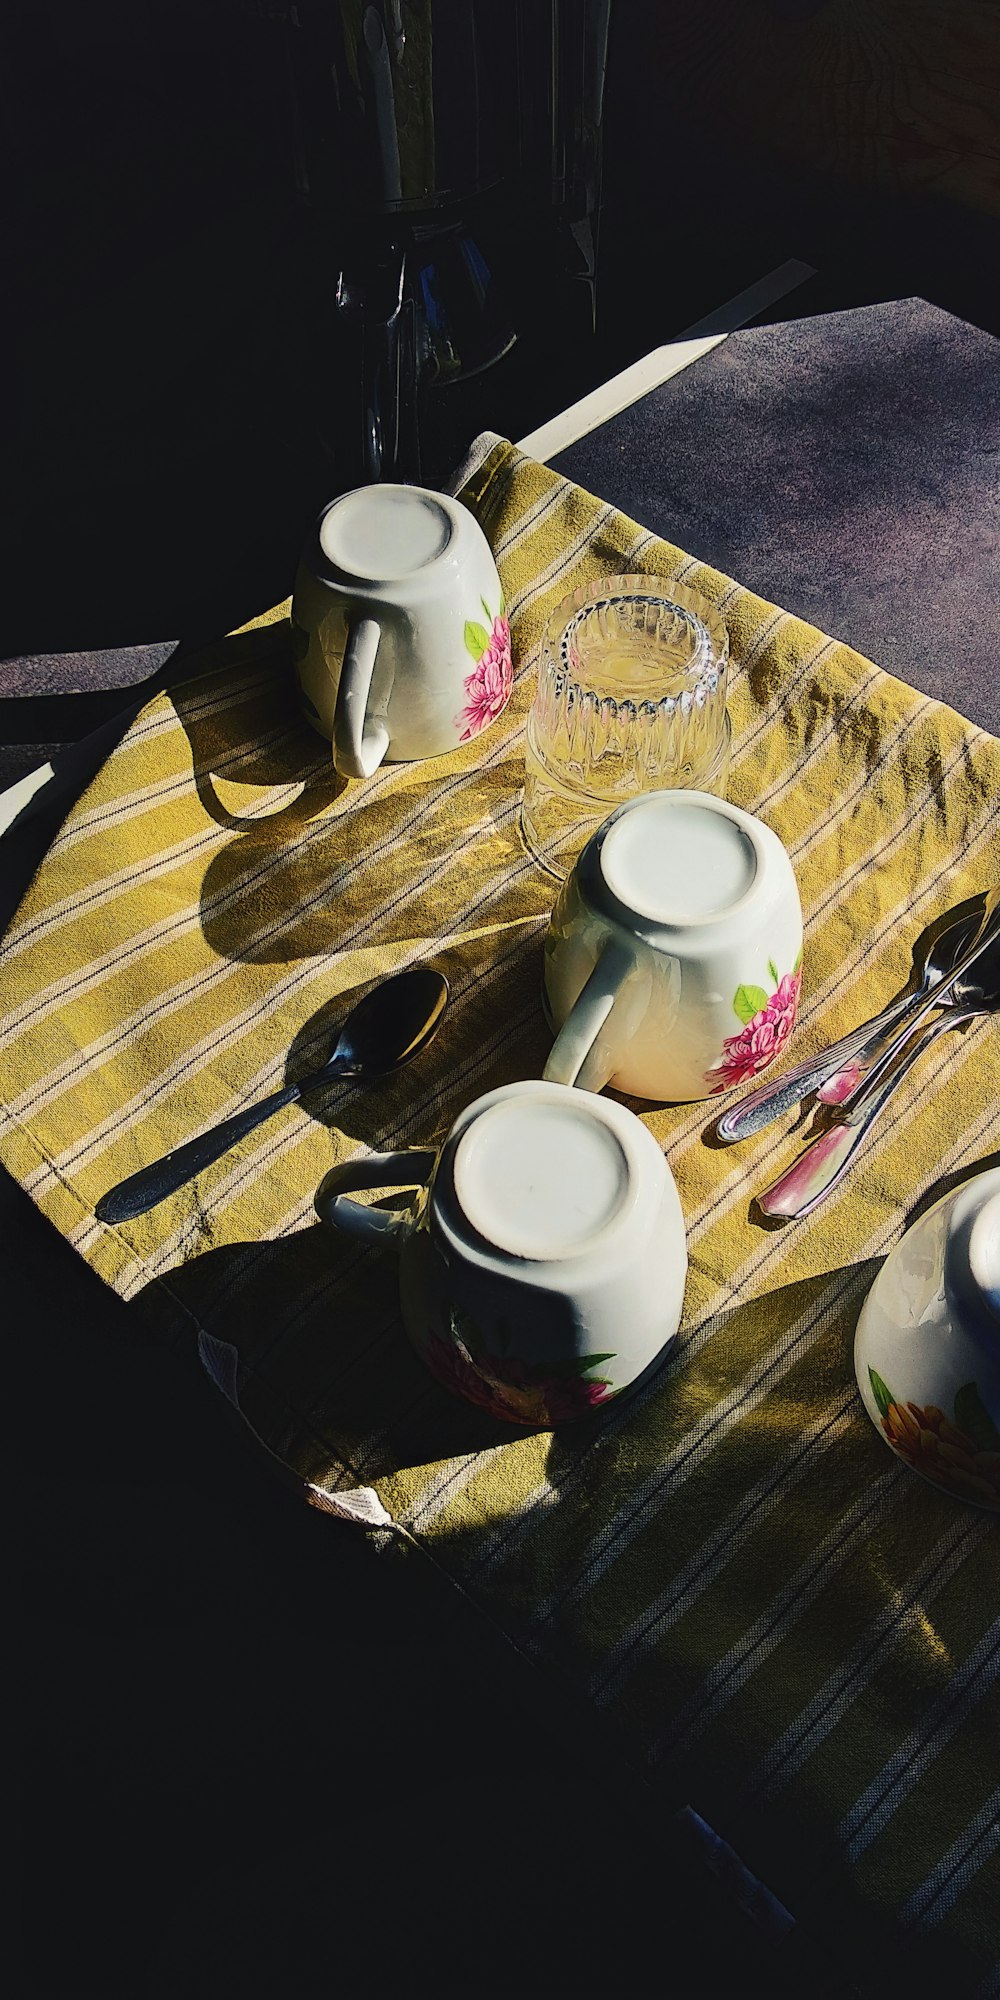 Tasse en céramique blanche à côté d’une fourchette et d’un couteau en acier inoxydable sur une table brune